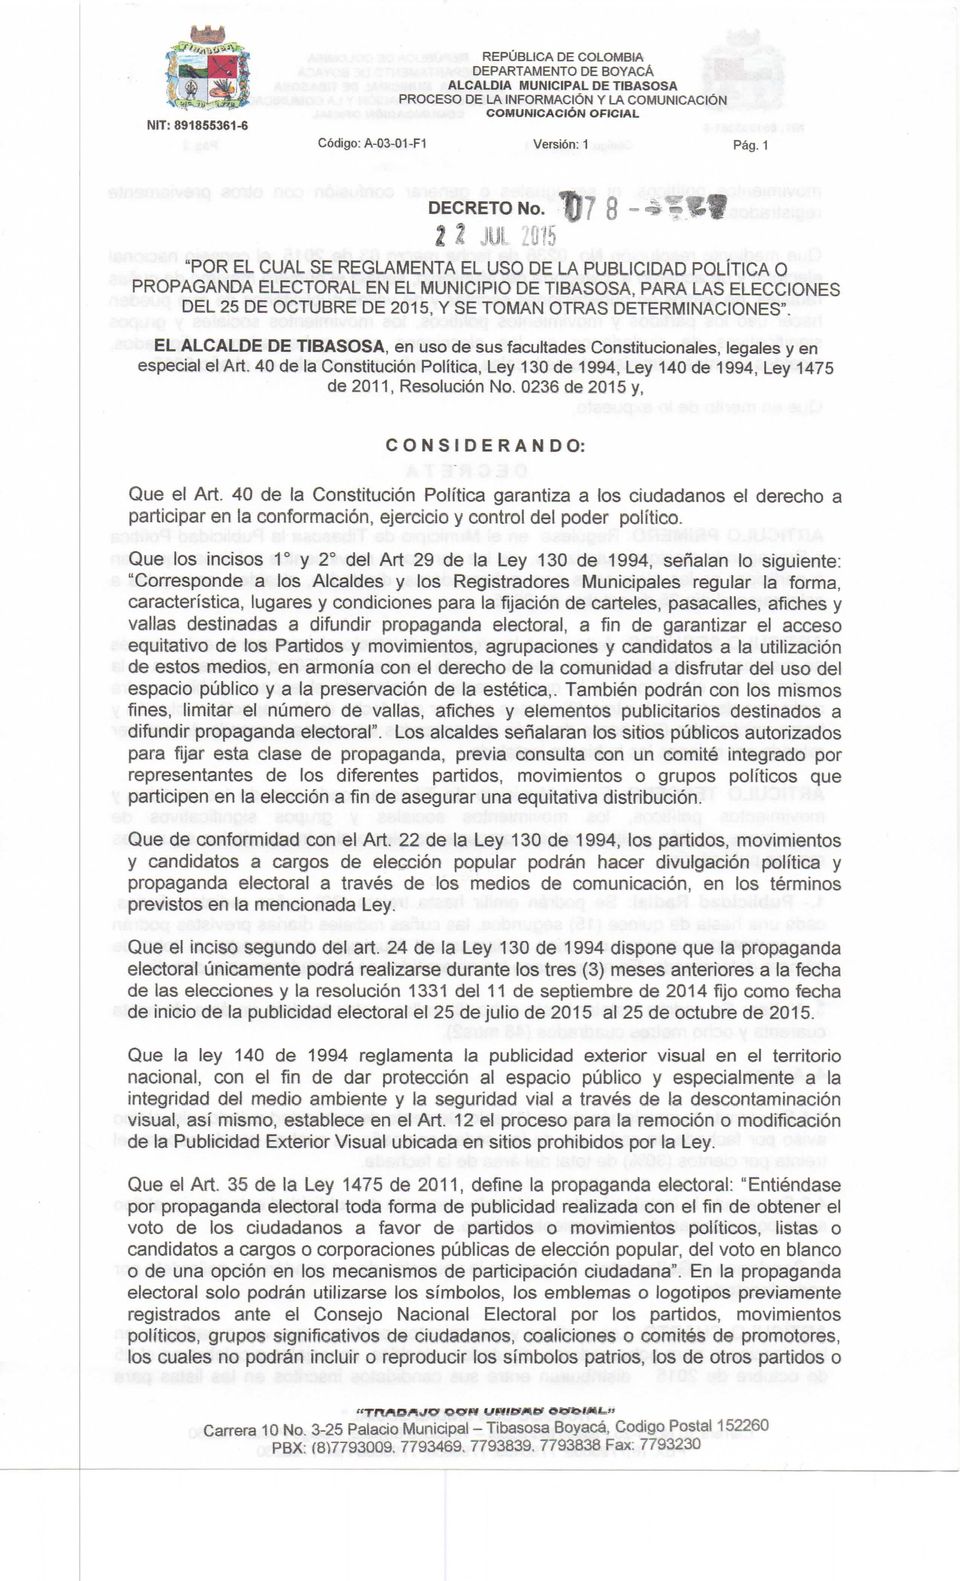 DETERMINACIONES". EL ALCALDE DE TIBASOSA, en uso de sus facultades Constitucionales, legales y en especial el Art.